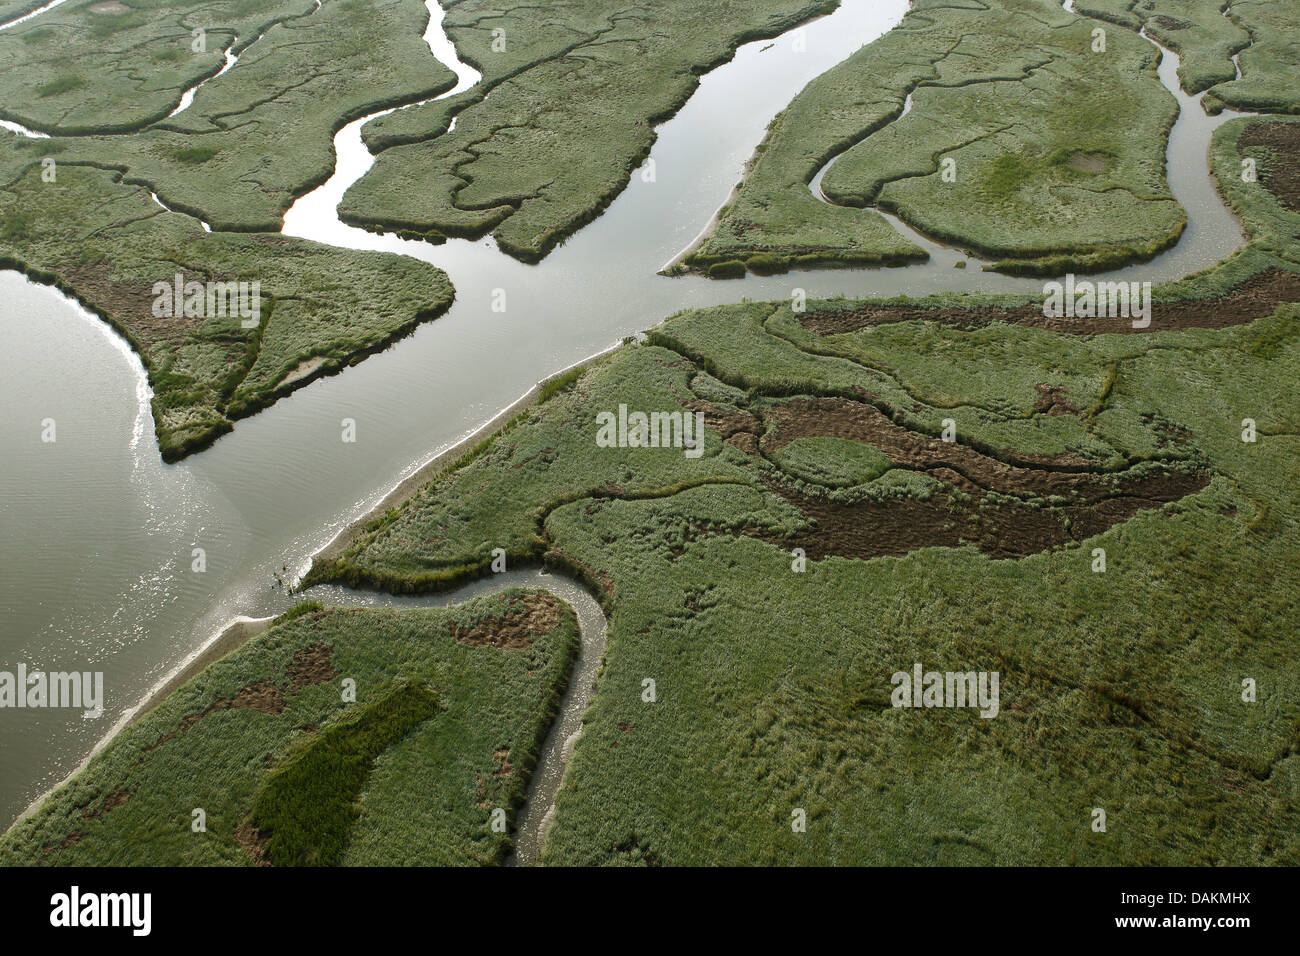 Vue aérienne de River delta Verdronken land van Saeftinghe, Pays-Bas, Zeeuws-Vlaanderen, Verdronken land van Saeftinghe Banque D'Images